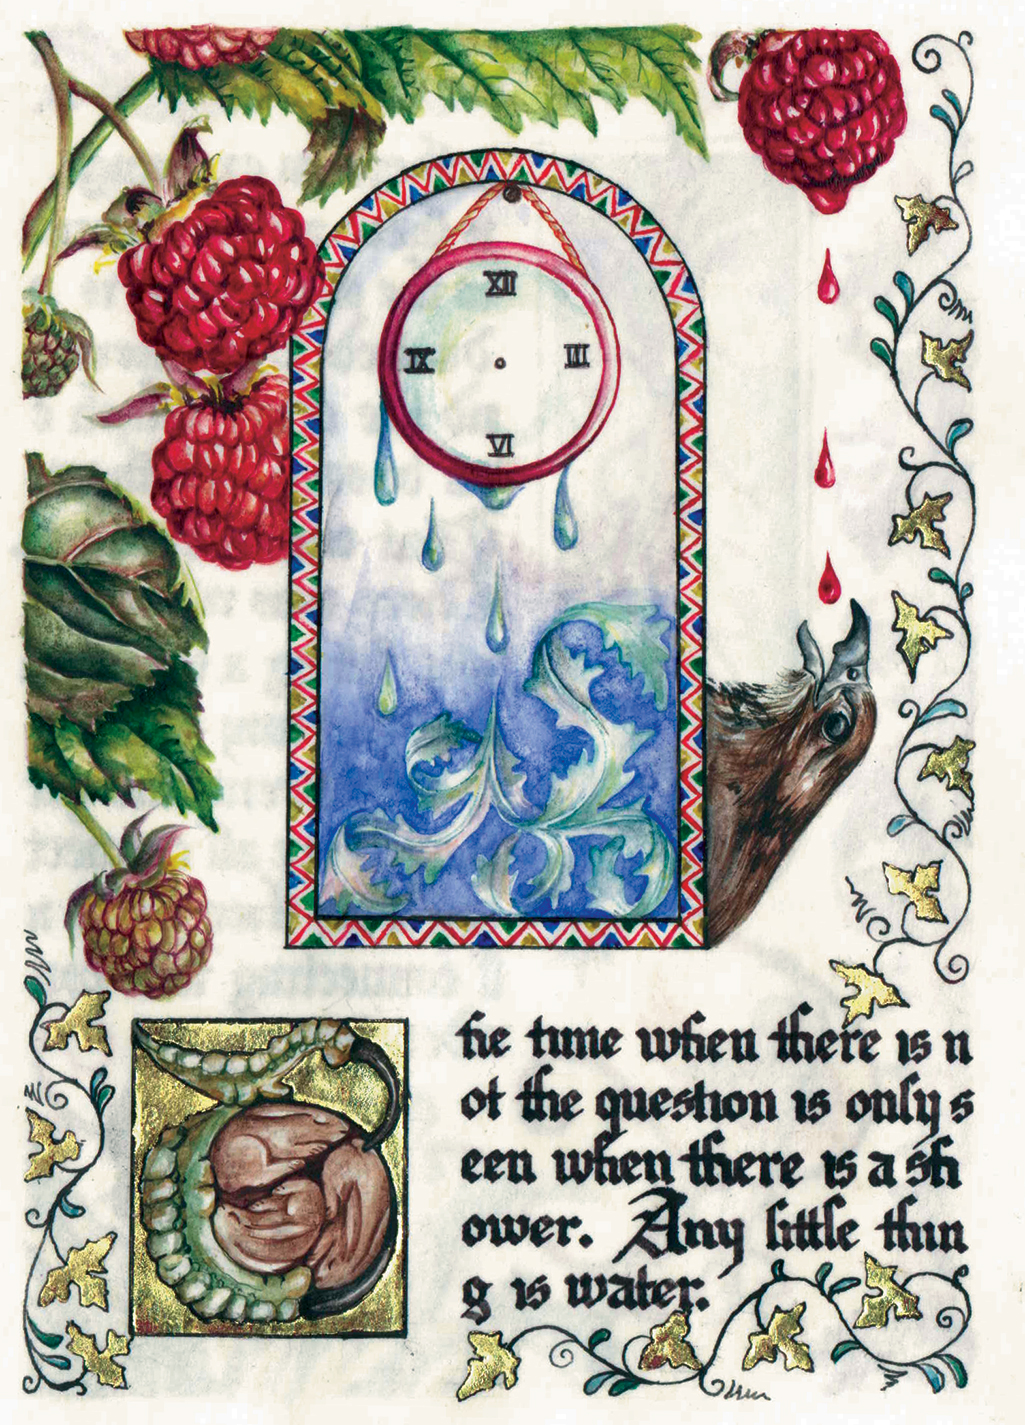 cathy weber - art - artmaker - watercolor - parchment- montana - Gertrude - stein - tender buttons - illumination - book - artist